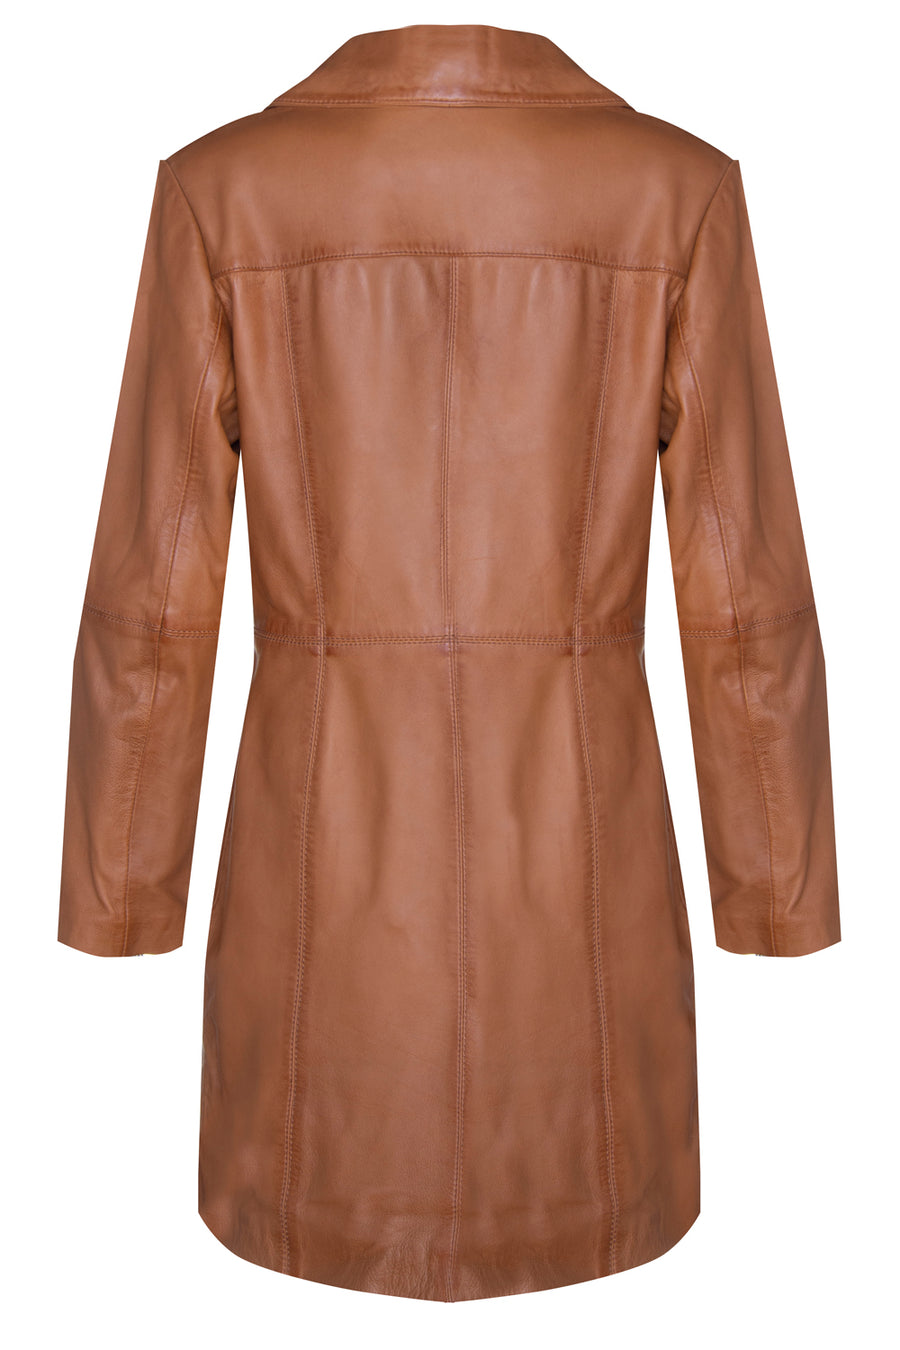 Frye Ladies' Leather Jacket – RJP Unlimited